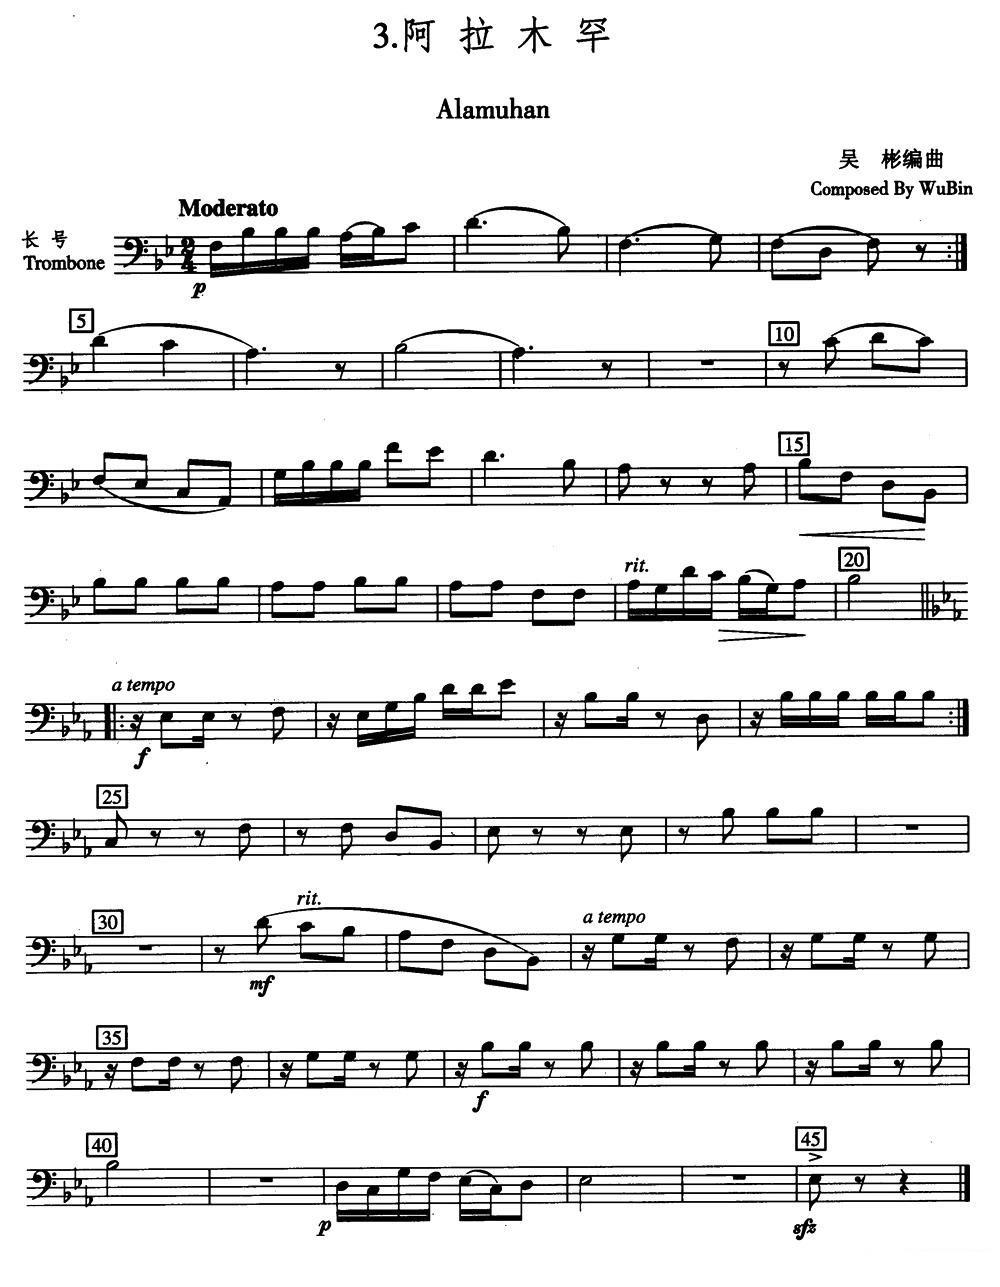 铜管乐谱曲谱 五重奏长号分谱：阿拉木罕